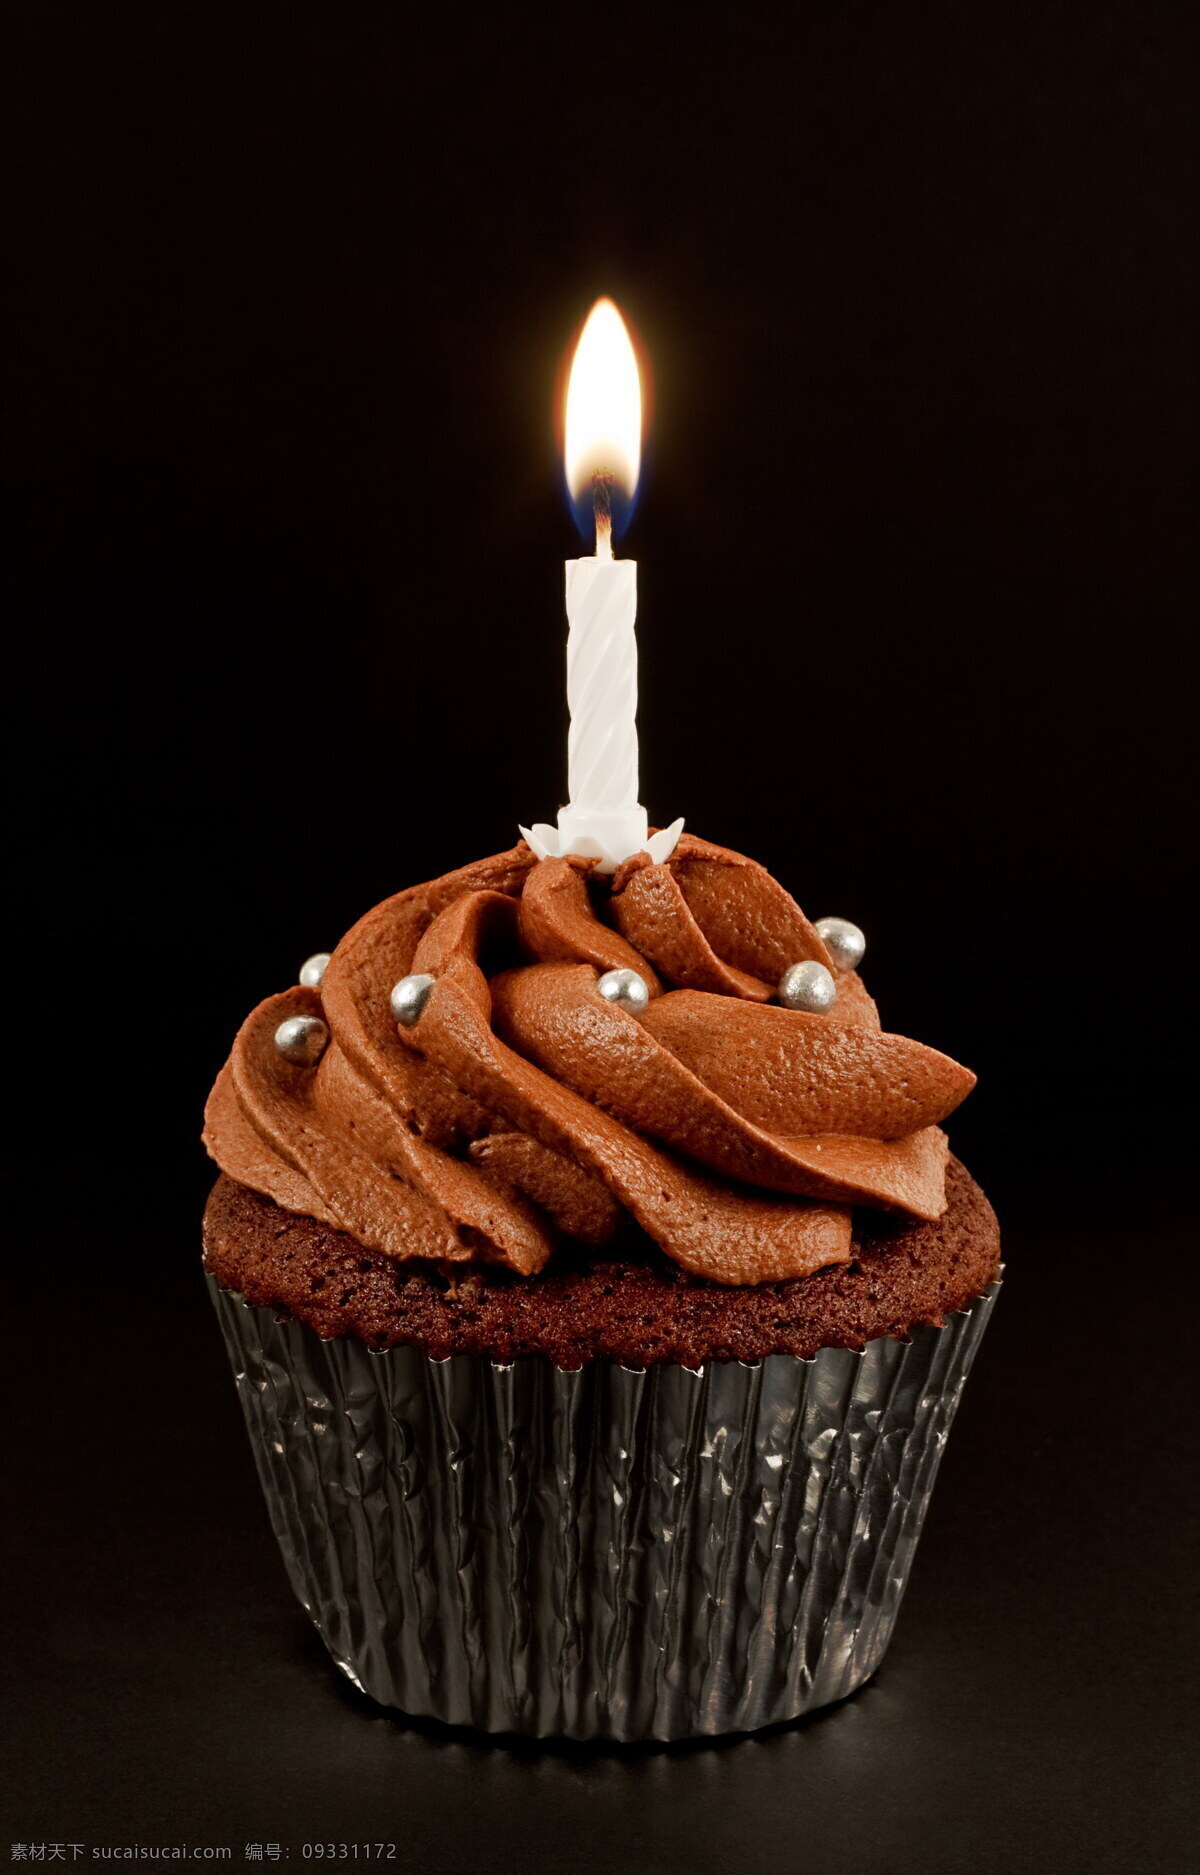 咖啡 蛋糕 糕点 奶油蛋糕 生日蛋糕 花朵 彩色蛋糕 盘子 蜡烛 生日蛋糕图片 餐饮美食